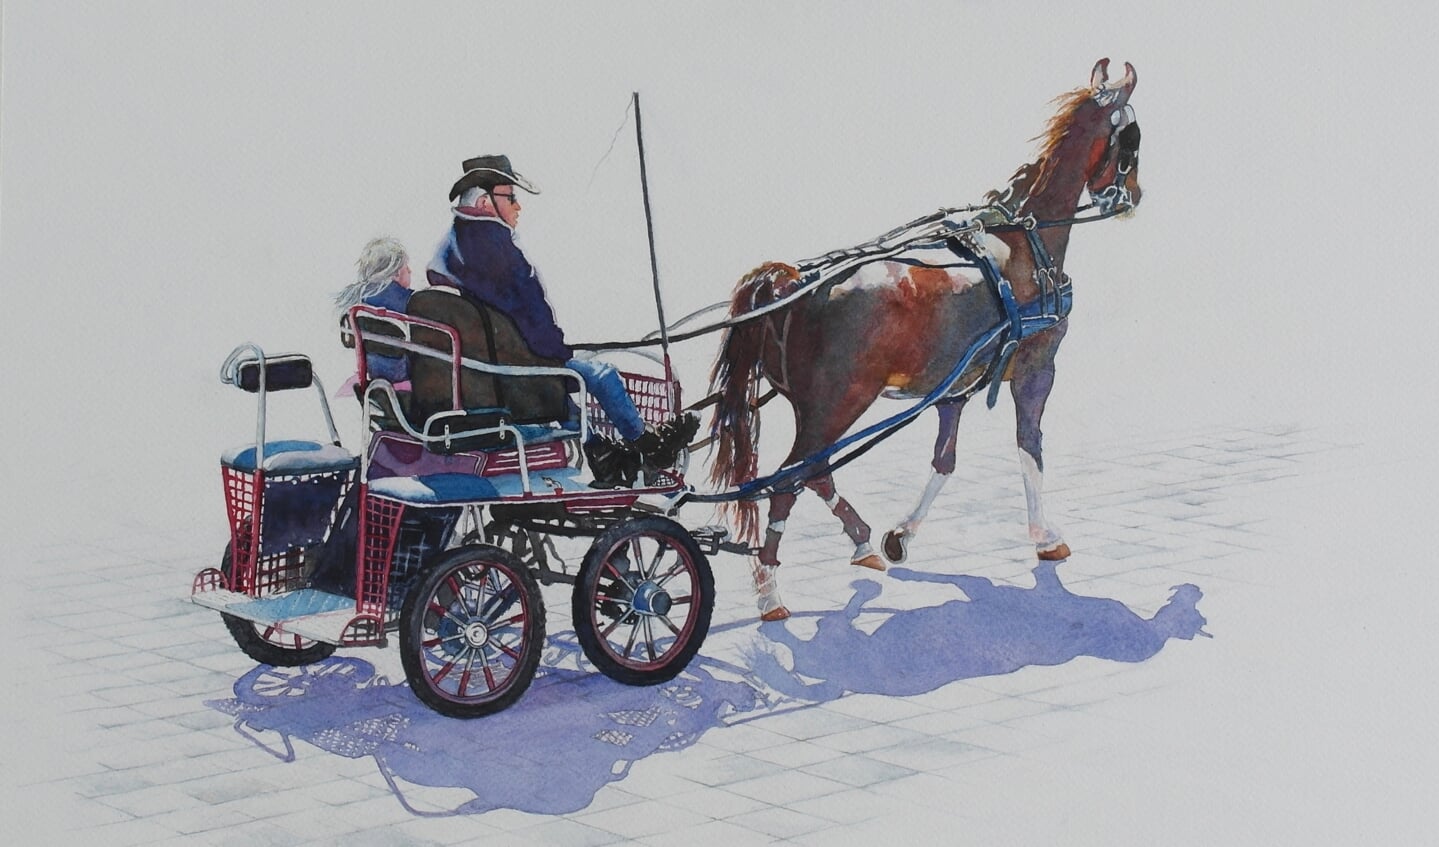 Gertruud schilderde een paardenwagen met man en kind. Dit schilderij is opgestuurd naar een expositie in Rusland.